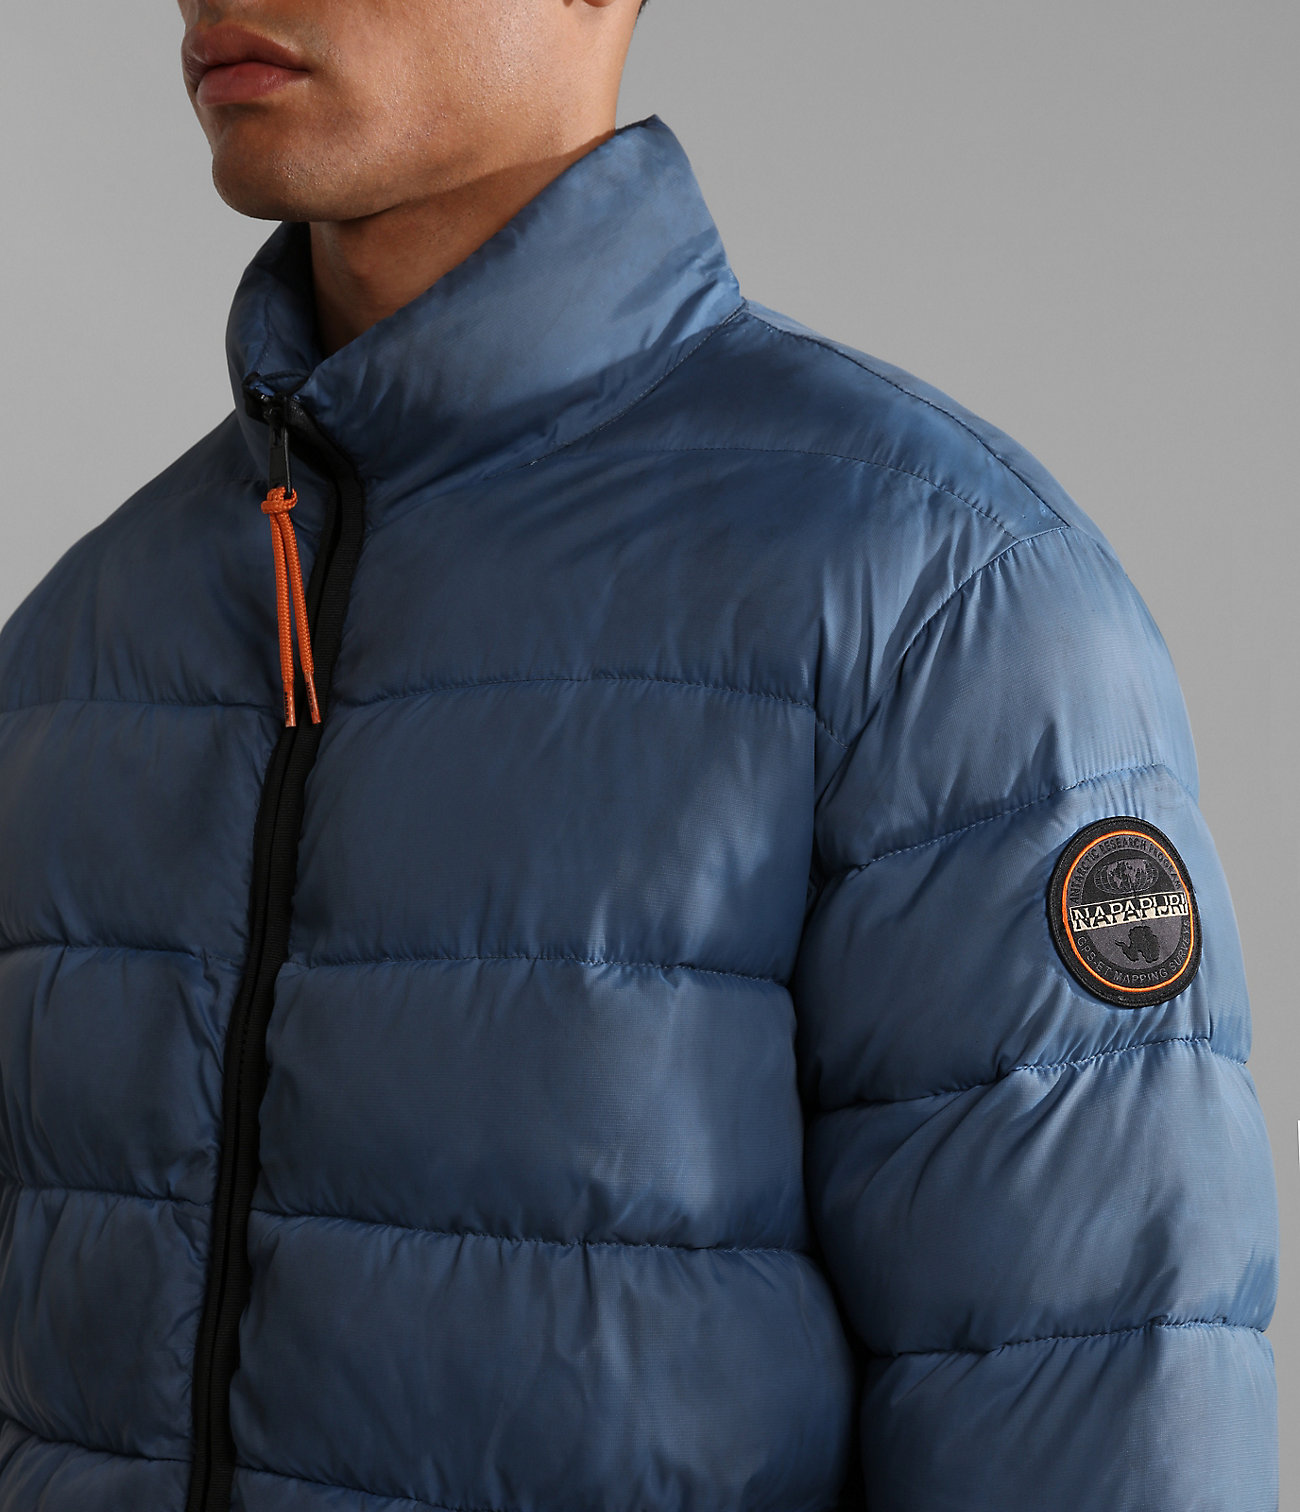 Tromsso Short Jacket | Napapijri | official store